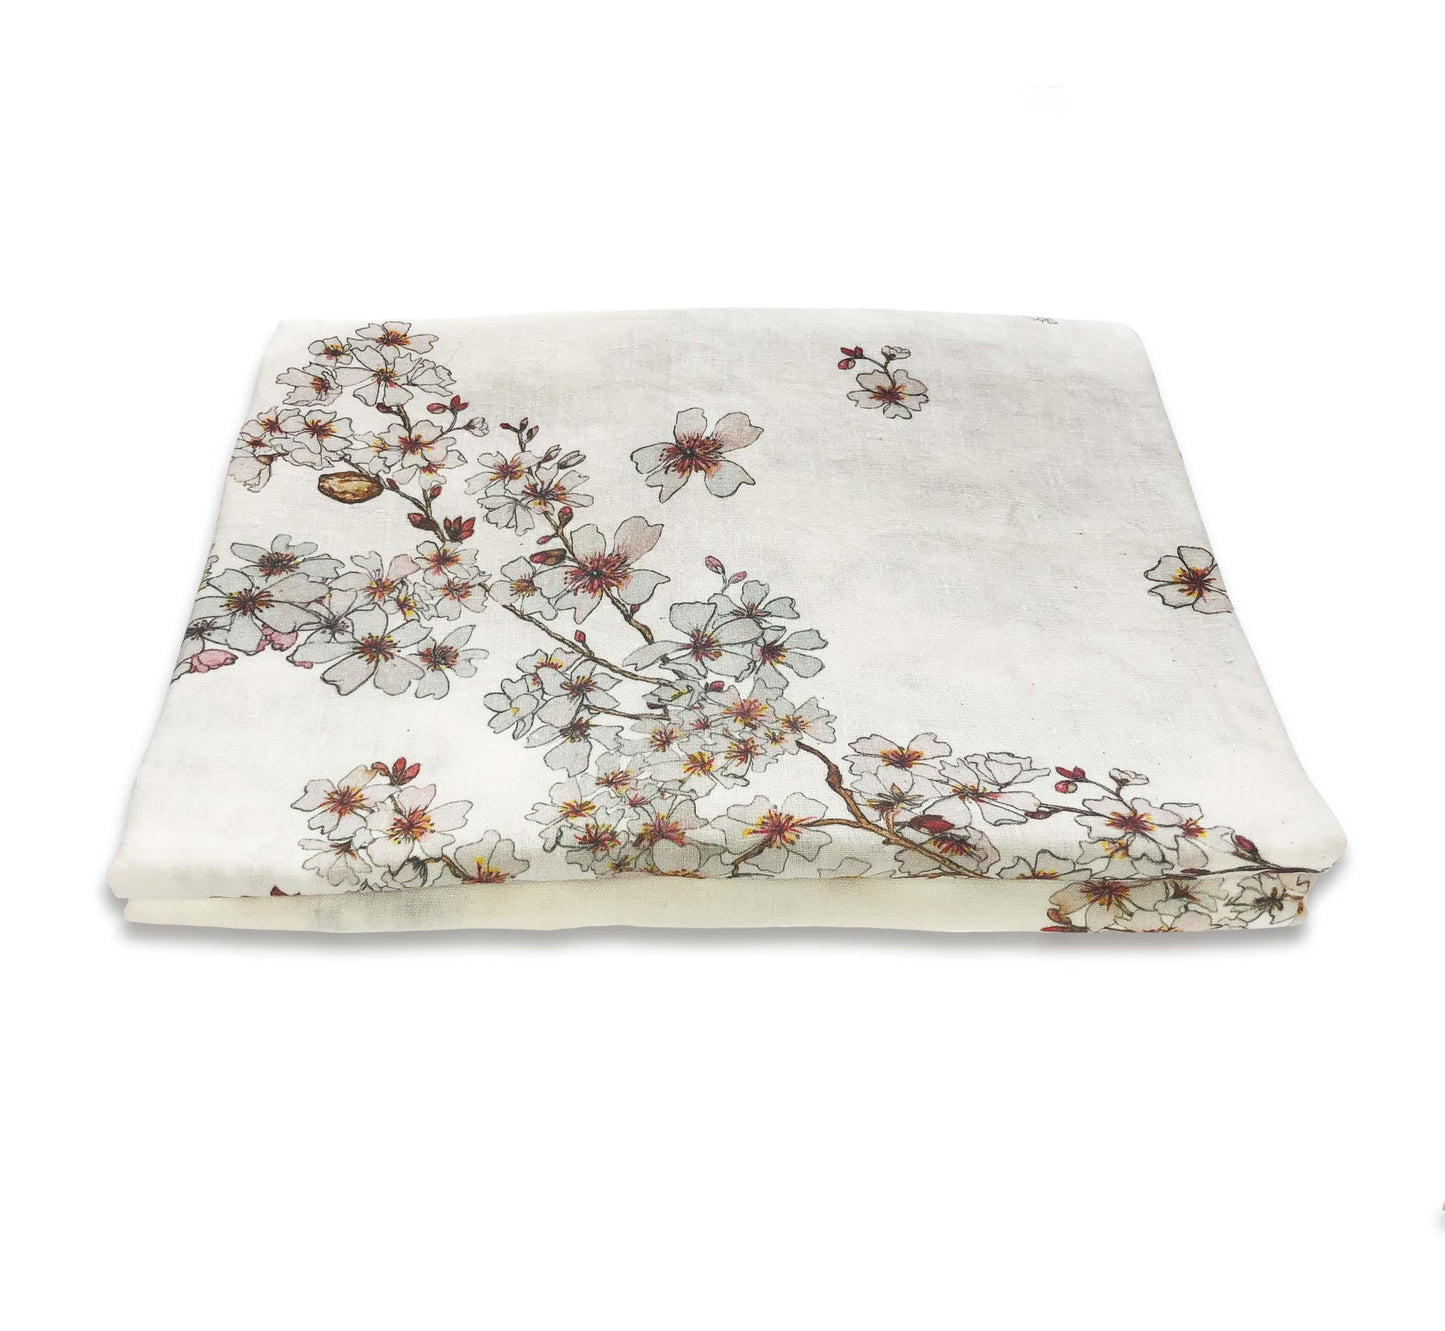 Bertioli, 'Almond Blossom Border Table Cloth'